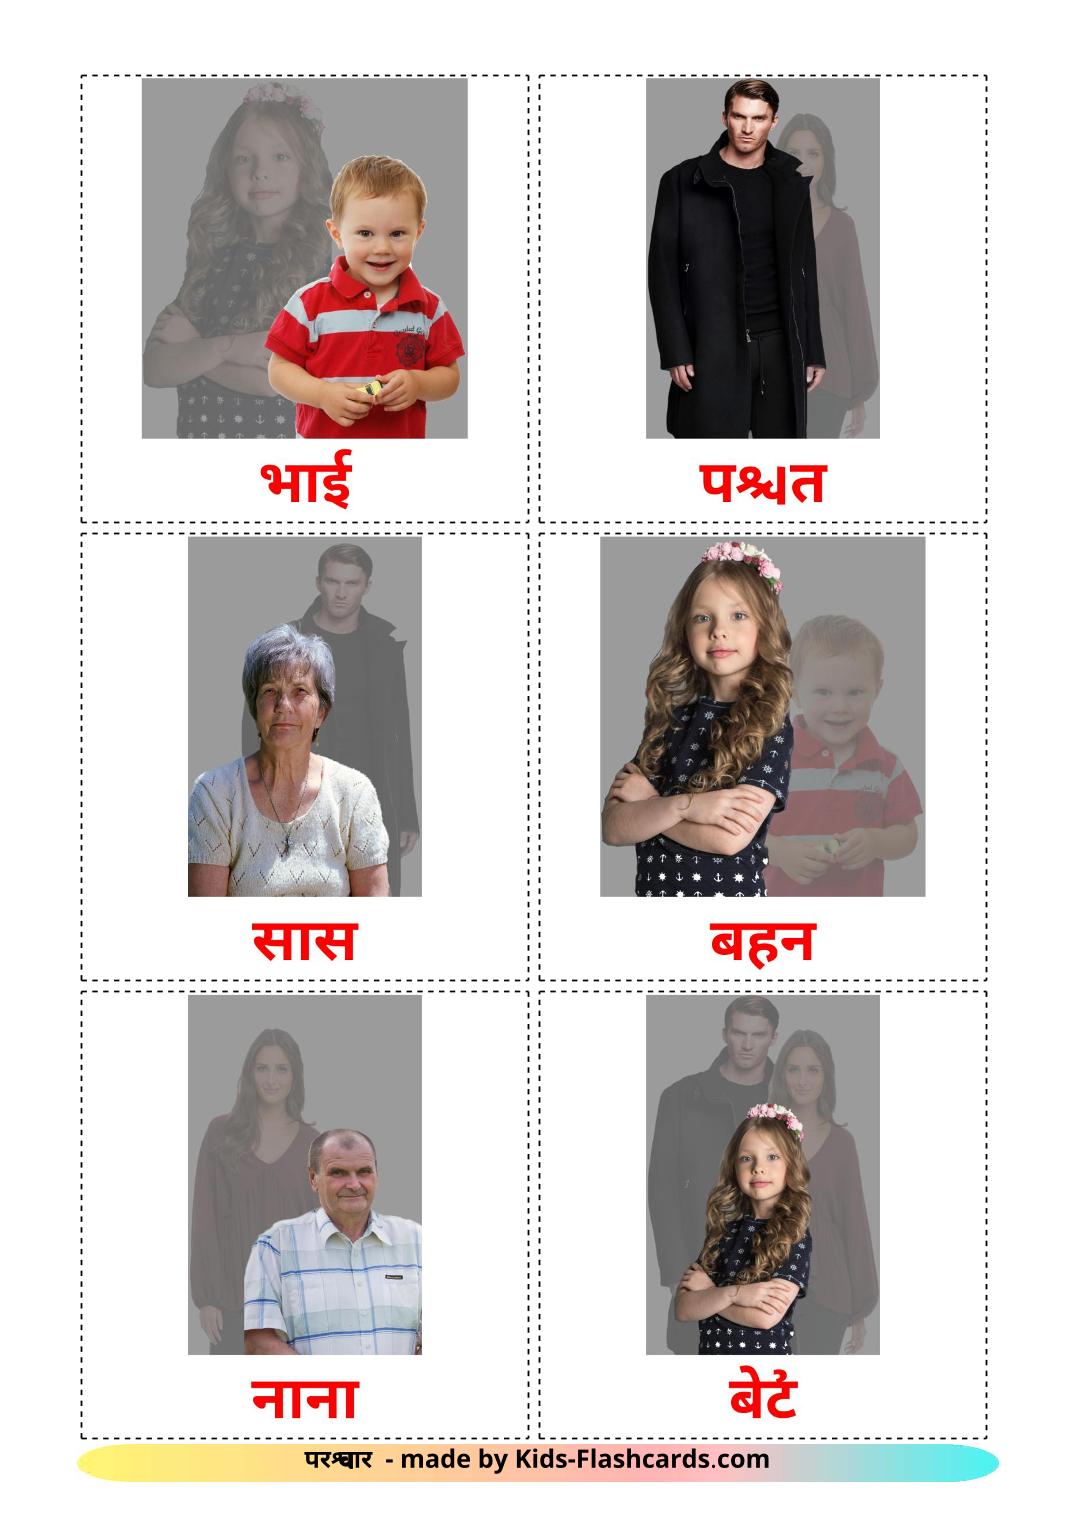 Membros da família - 32 Flashcards hindies gratuitos para impressão